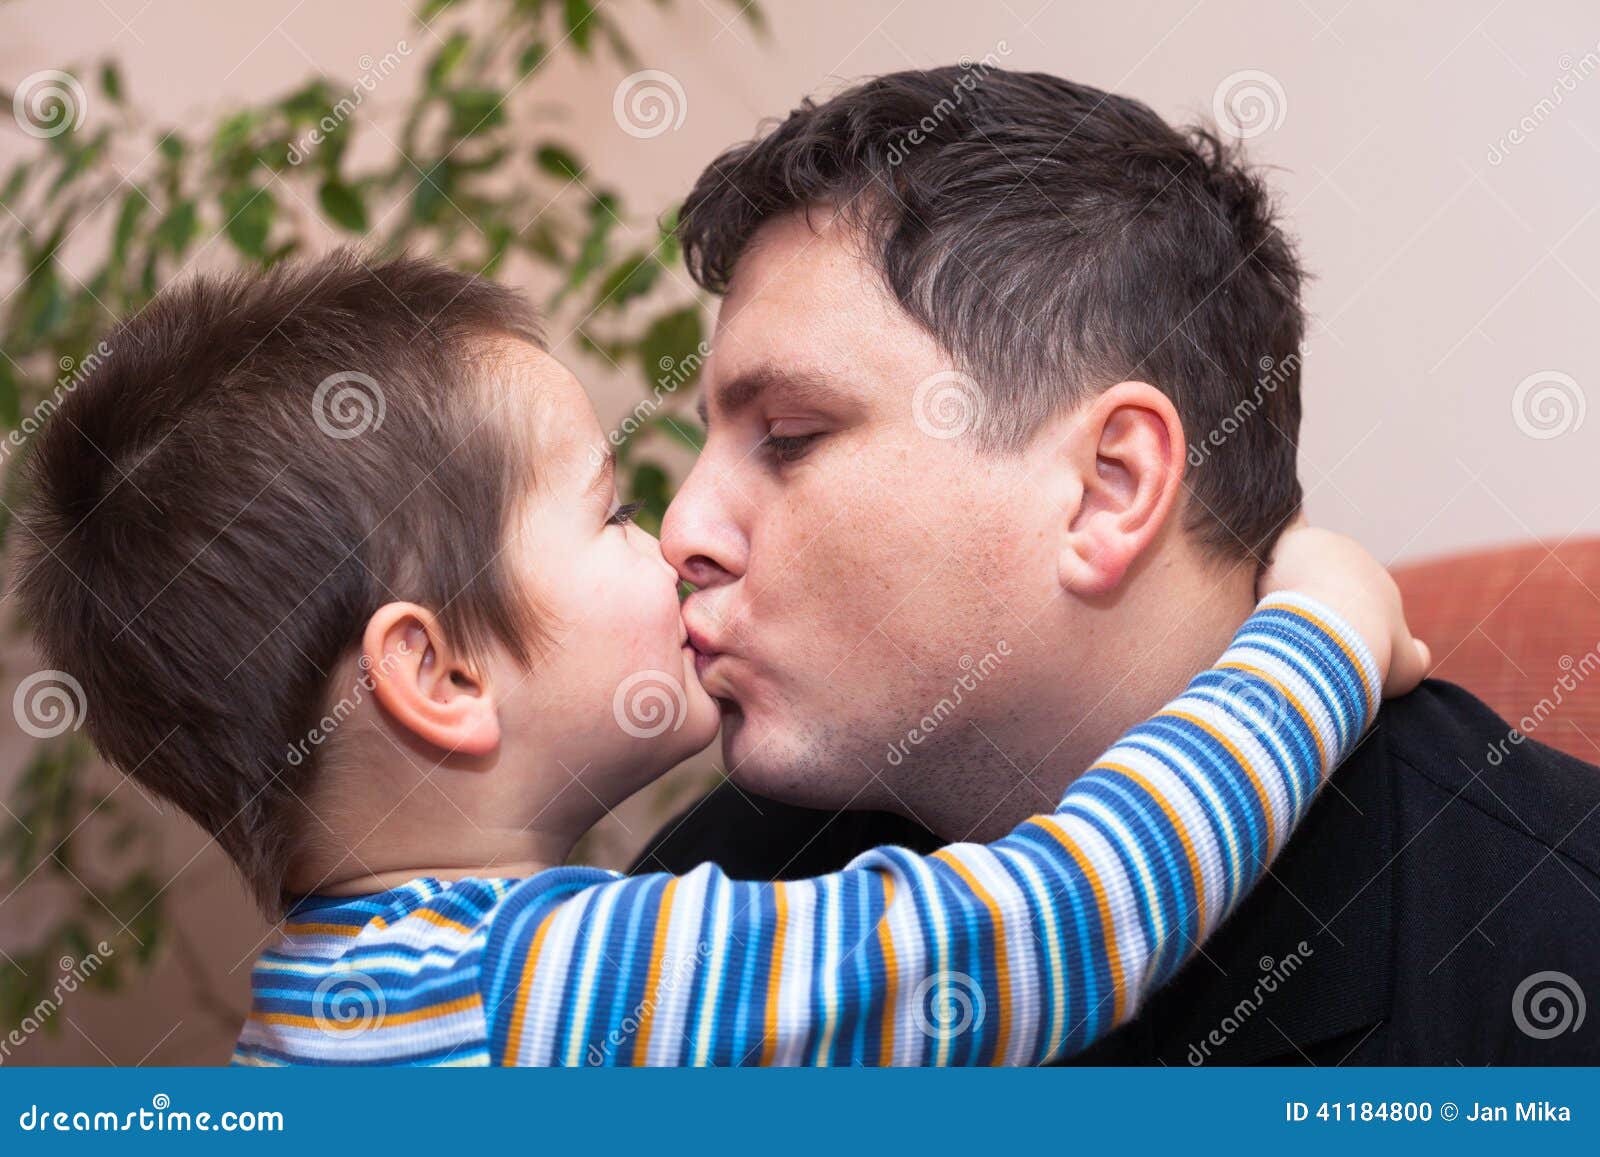 Сын возбудил отца. Мужчина целует ребенка. Поцелуй папу. Мальчик целует отца. Папа целует сына.